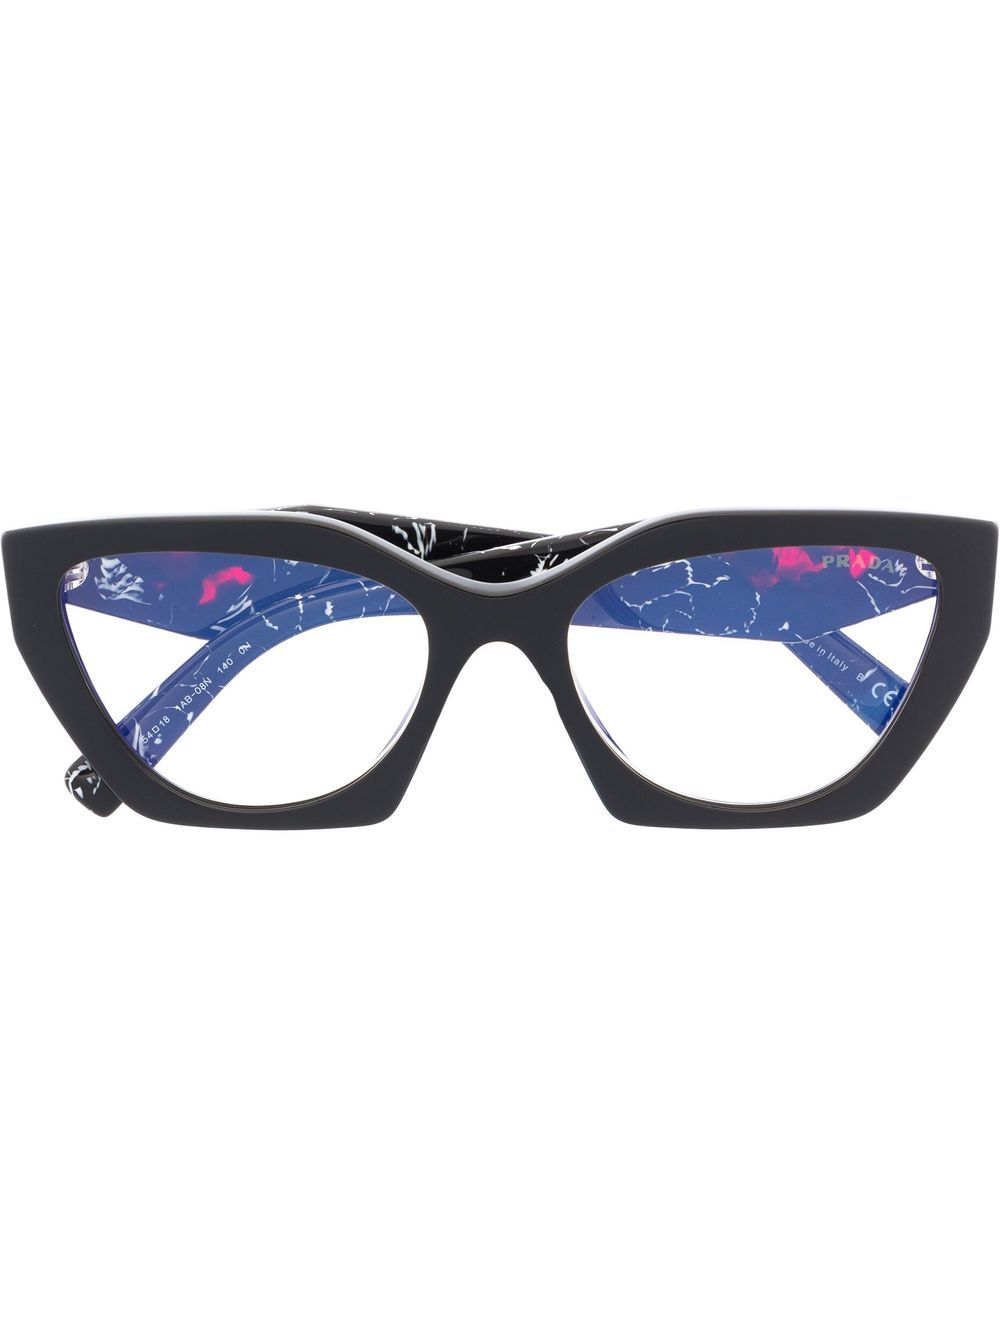 Prada Eyewear tortoiseshell-effect logo glasses - Black von Prada Eyewear